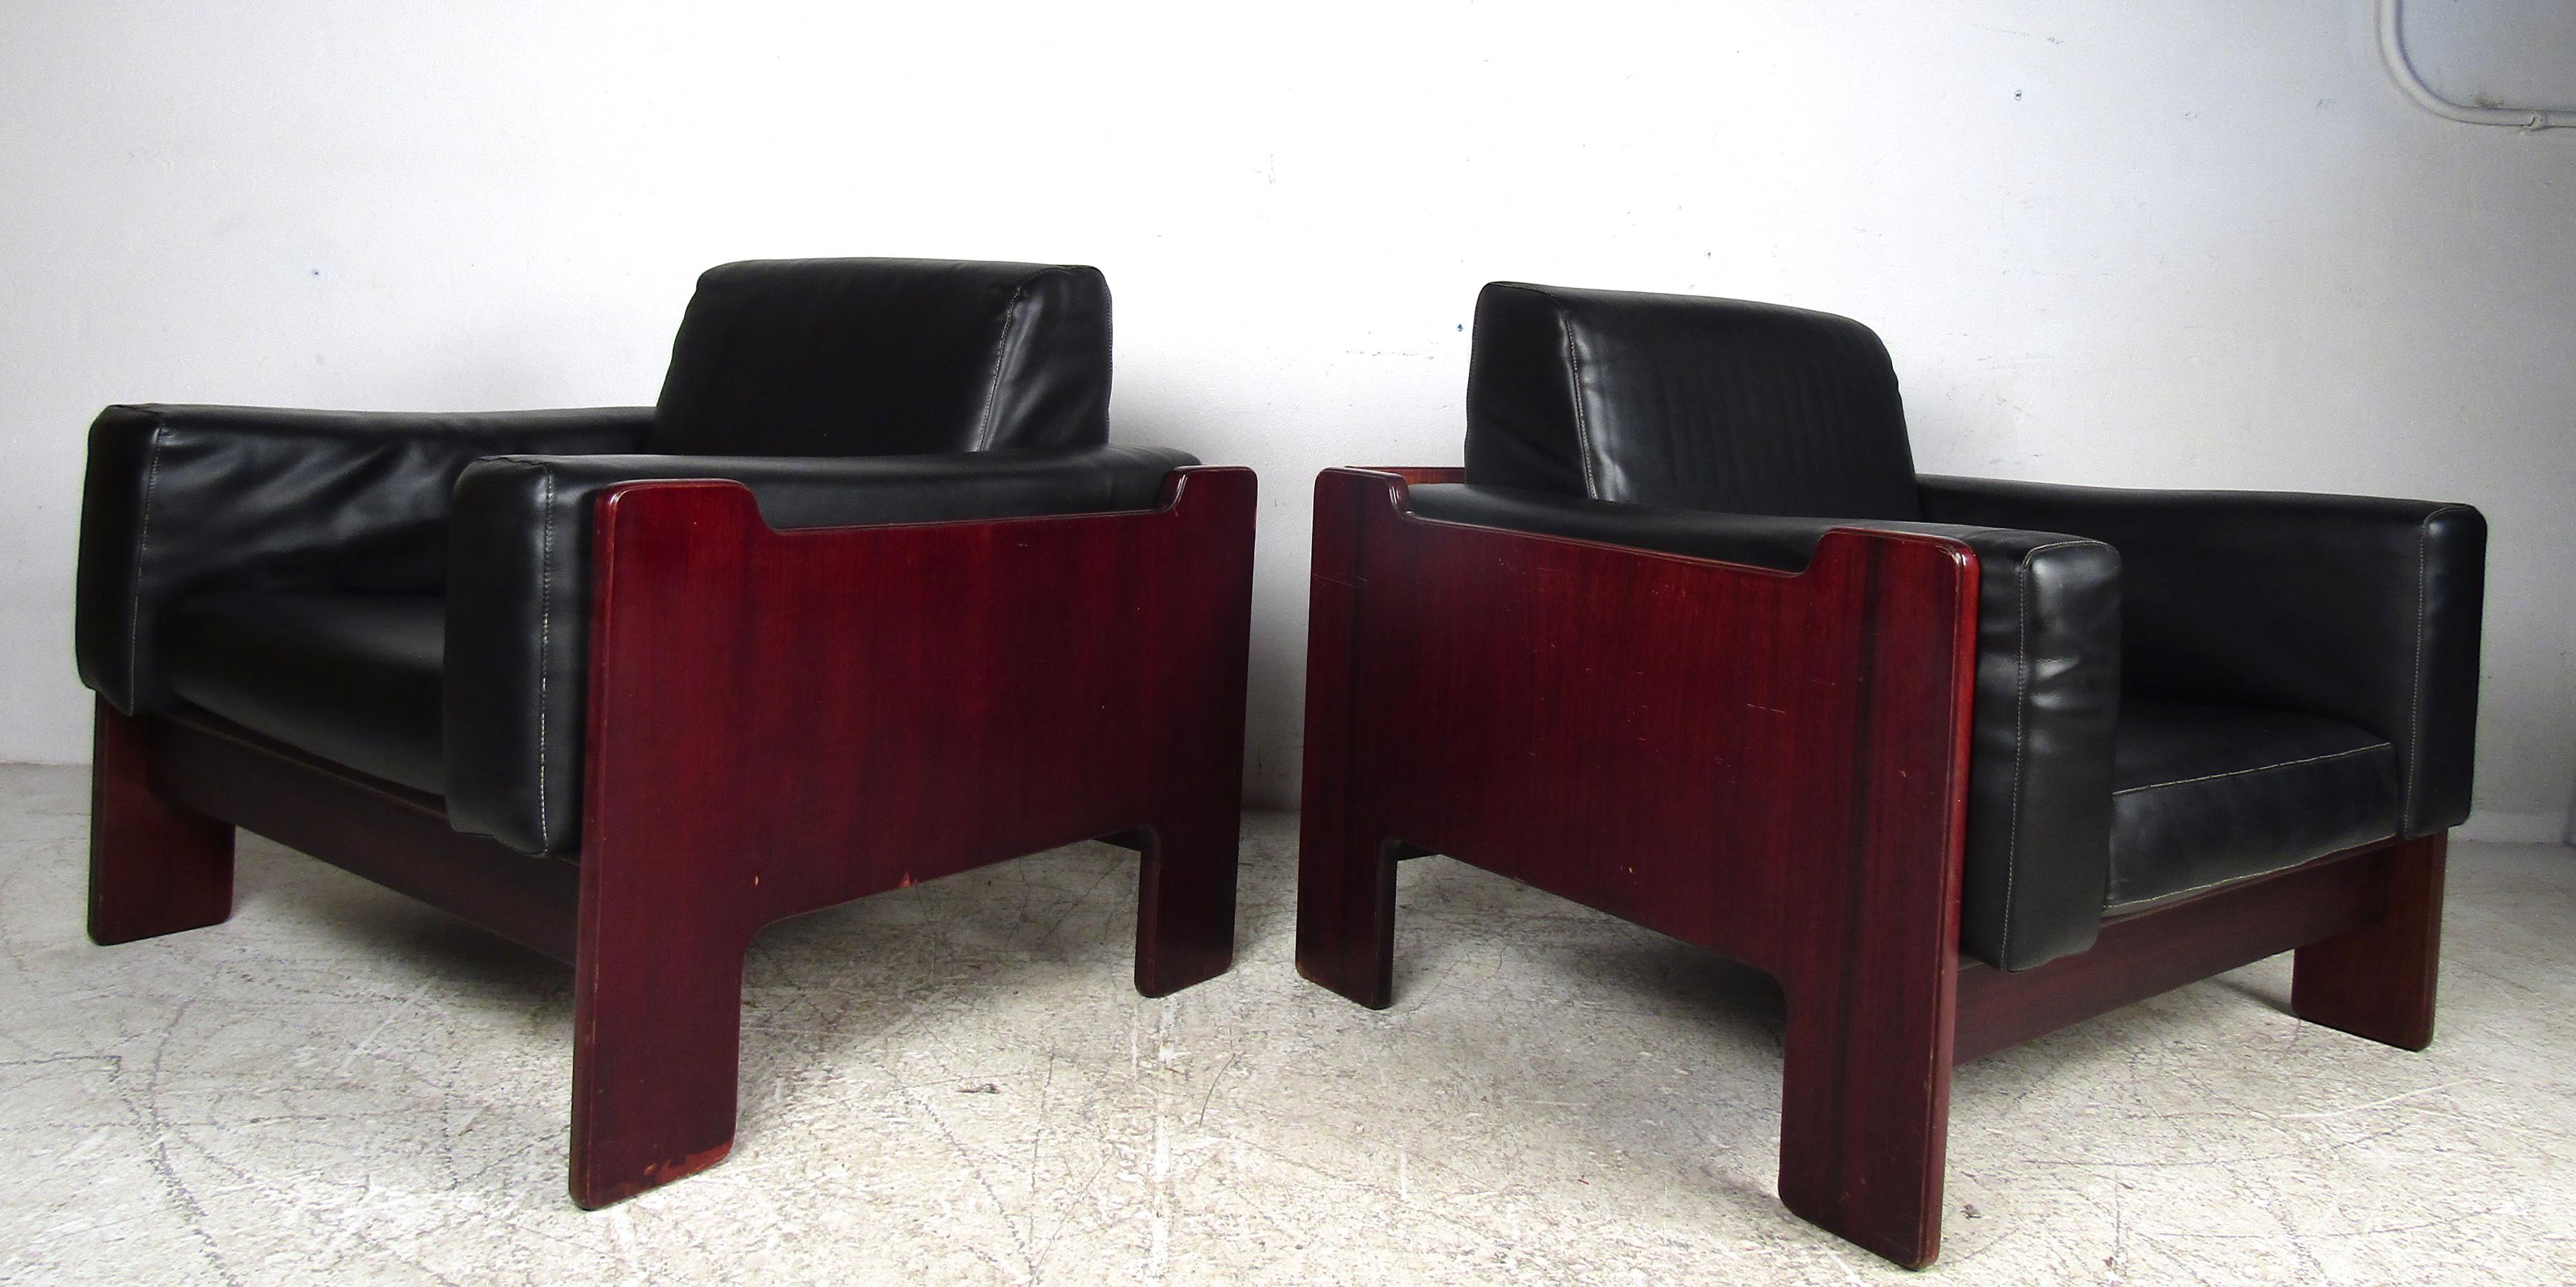 Cette superbe paire de chaises longues modernes du milieu du siècle présente une forme cubique confortable et des coussins amovibles surchargés recouverts de vinyle noir. Un design élégant et robuste qui ne manquera pas de faire une impression